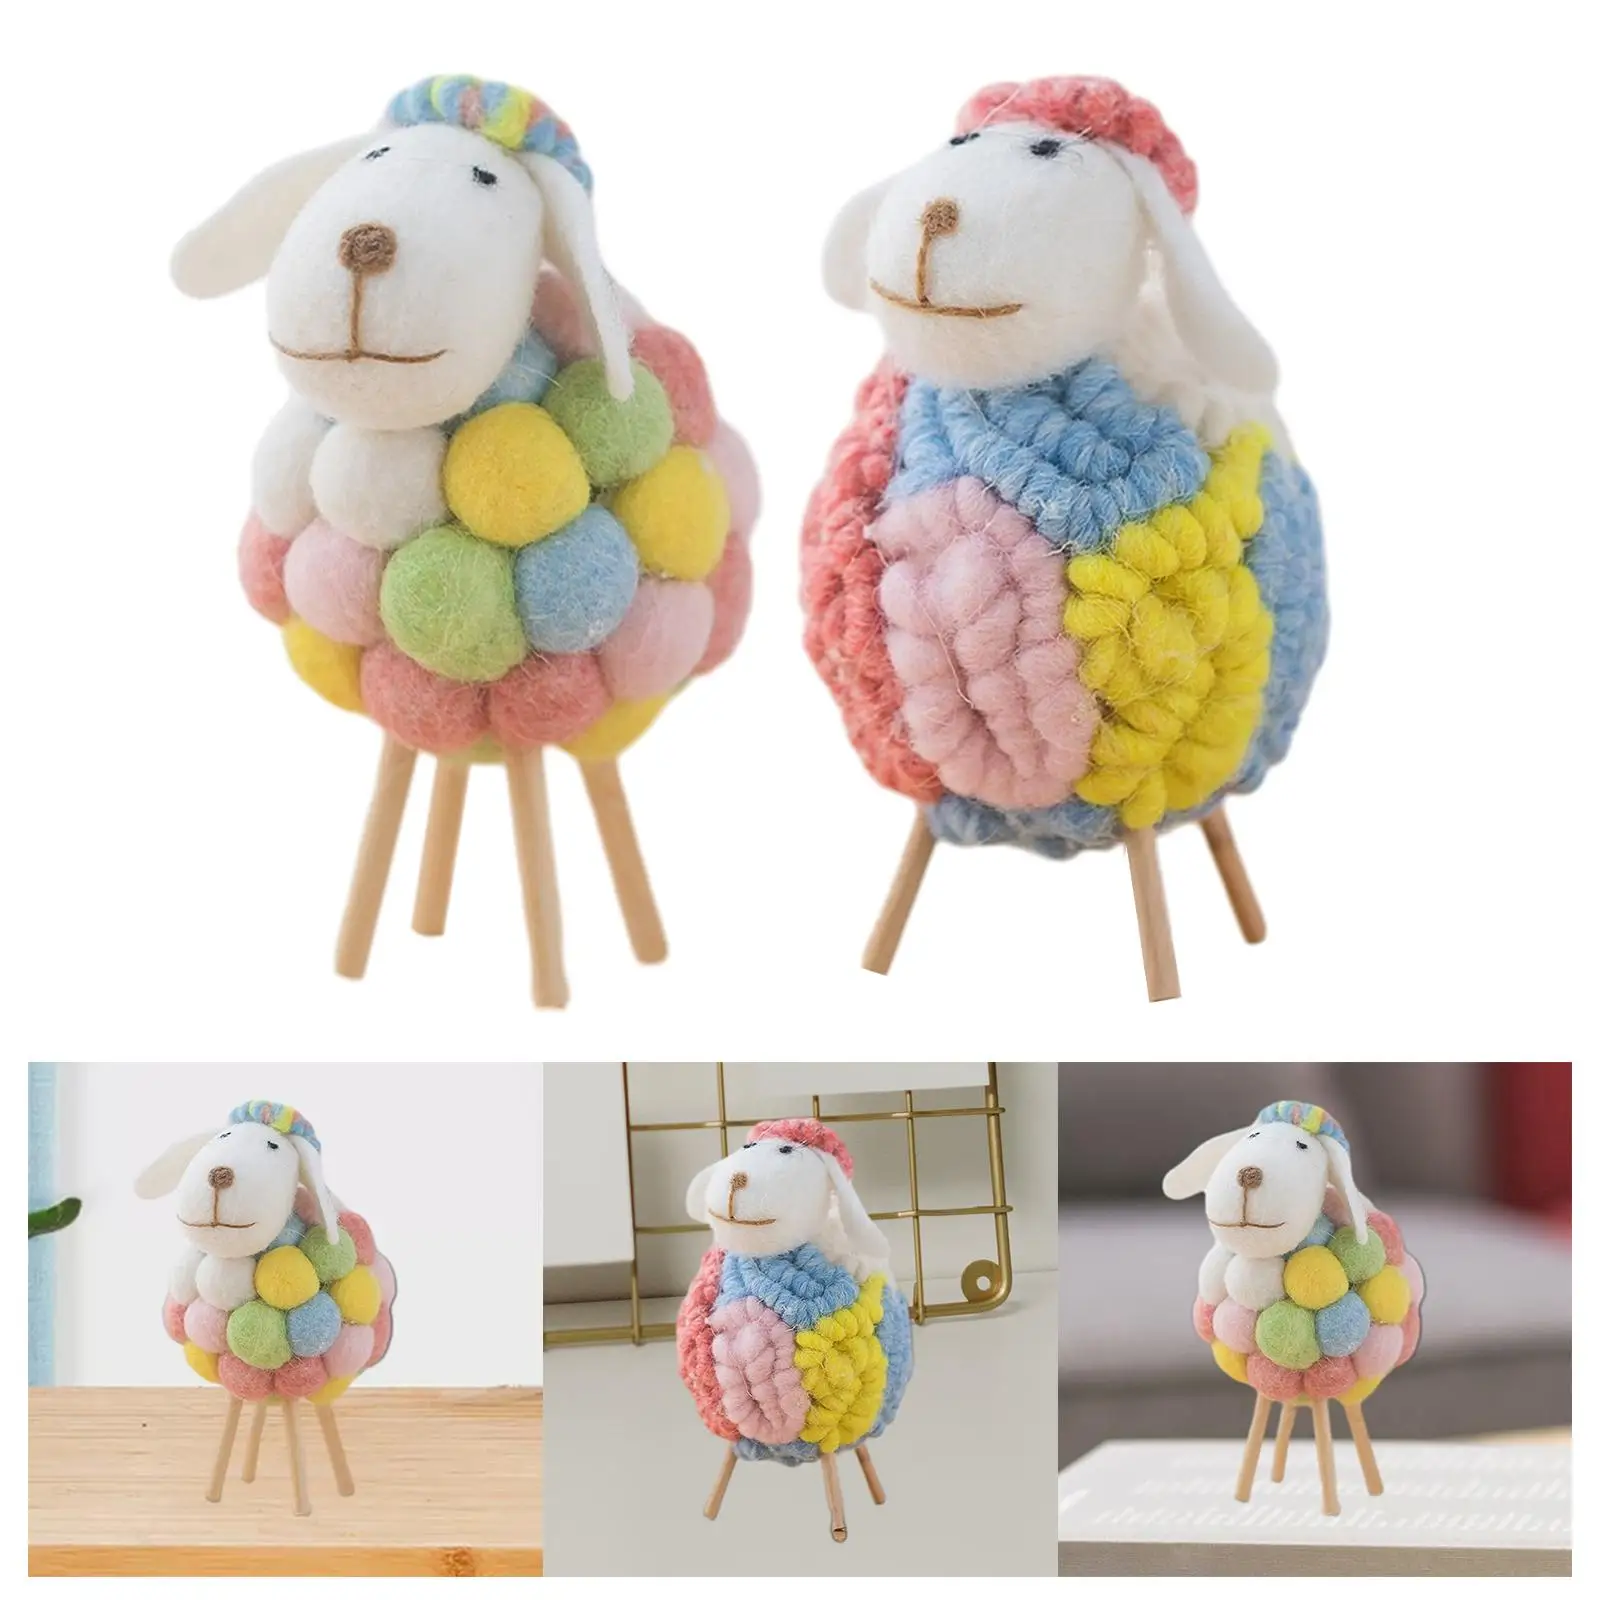 Felt Sheep Lamb Figurine Table Ornament Farm Animal Figurine for Kids Room